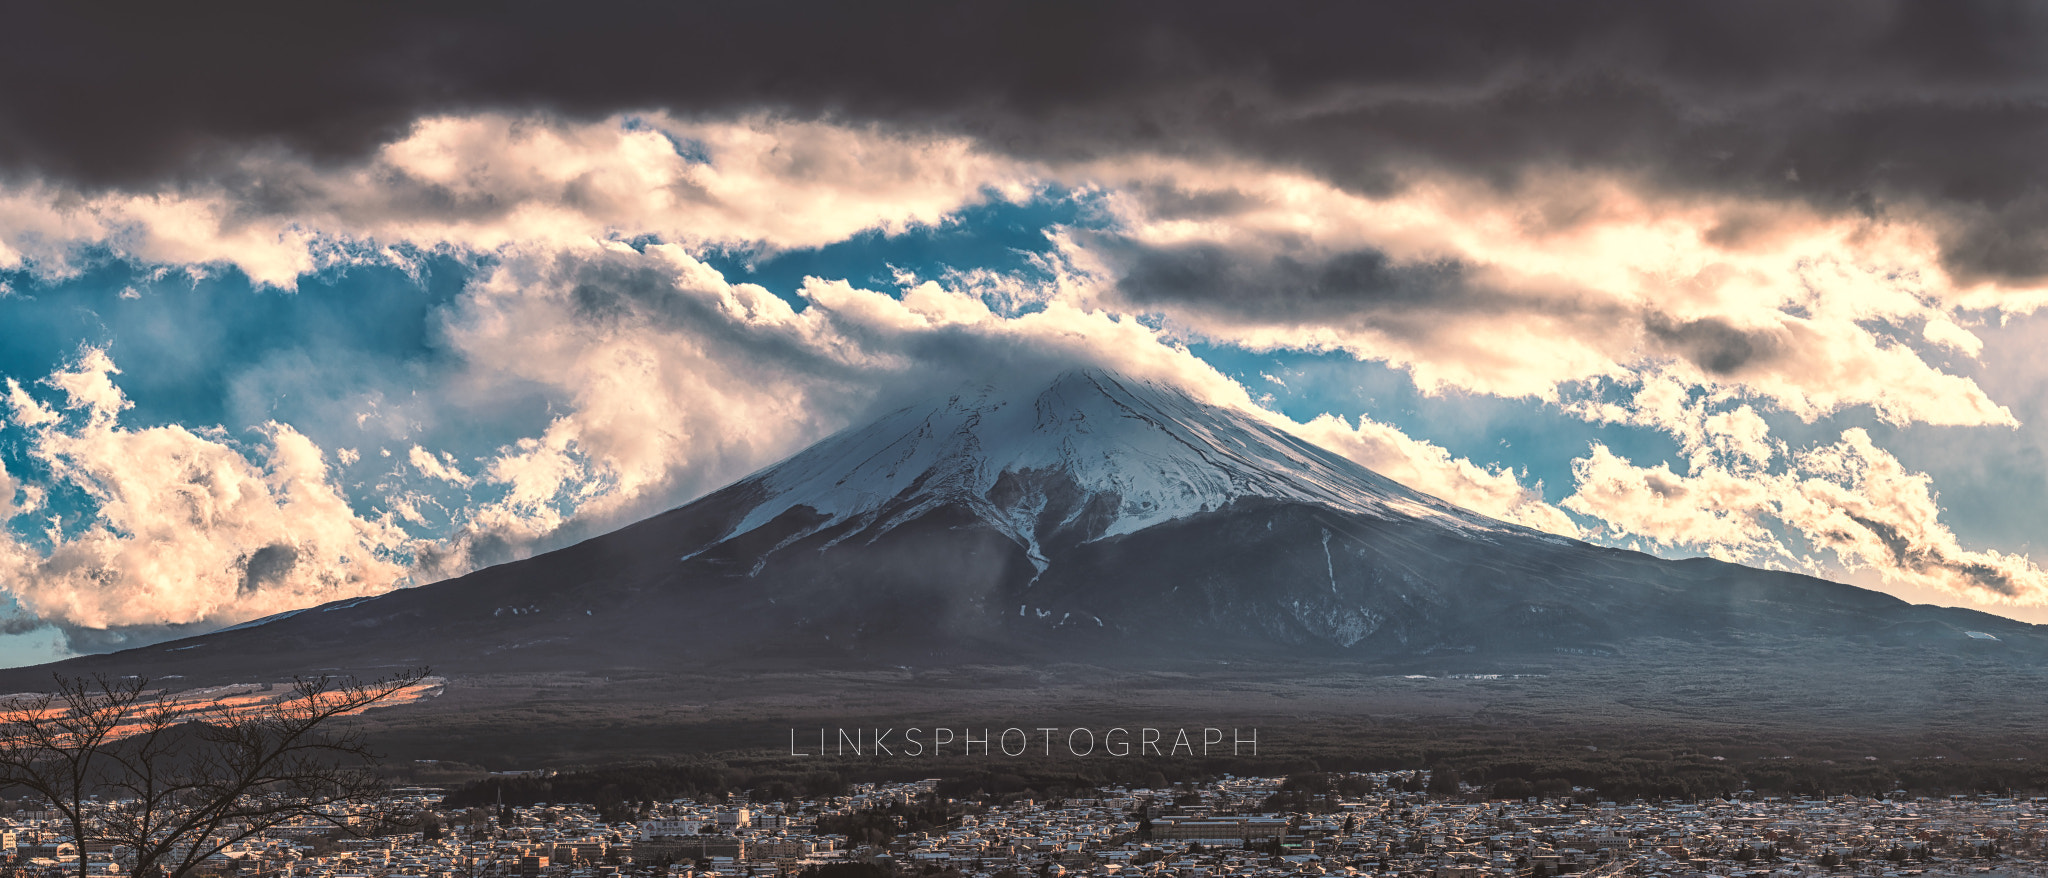 Nikon D810 sample photo. お客様の雪富士山アイスクリームが出来上がった～ photography